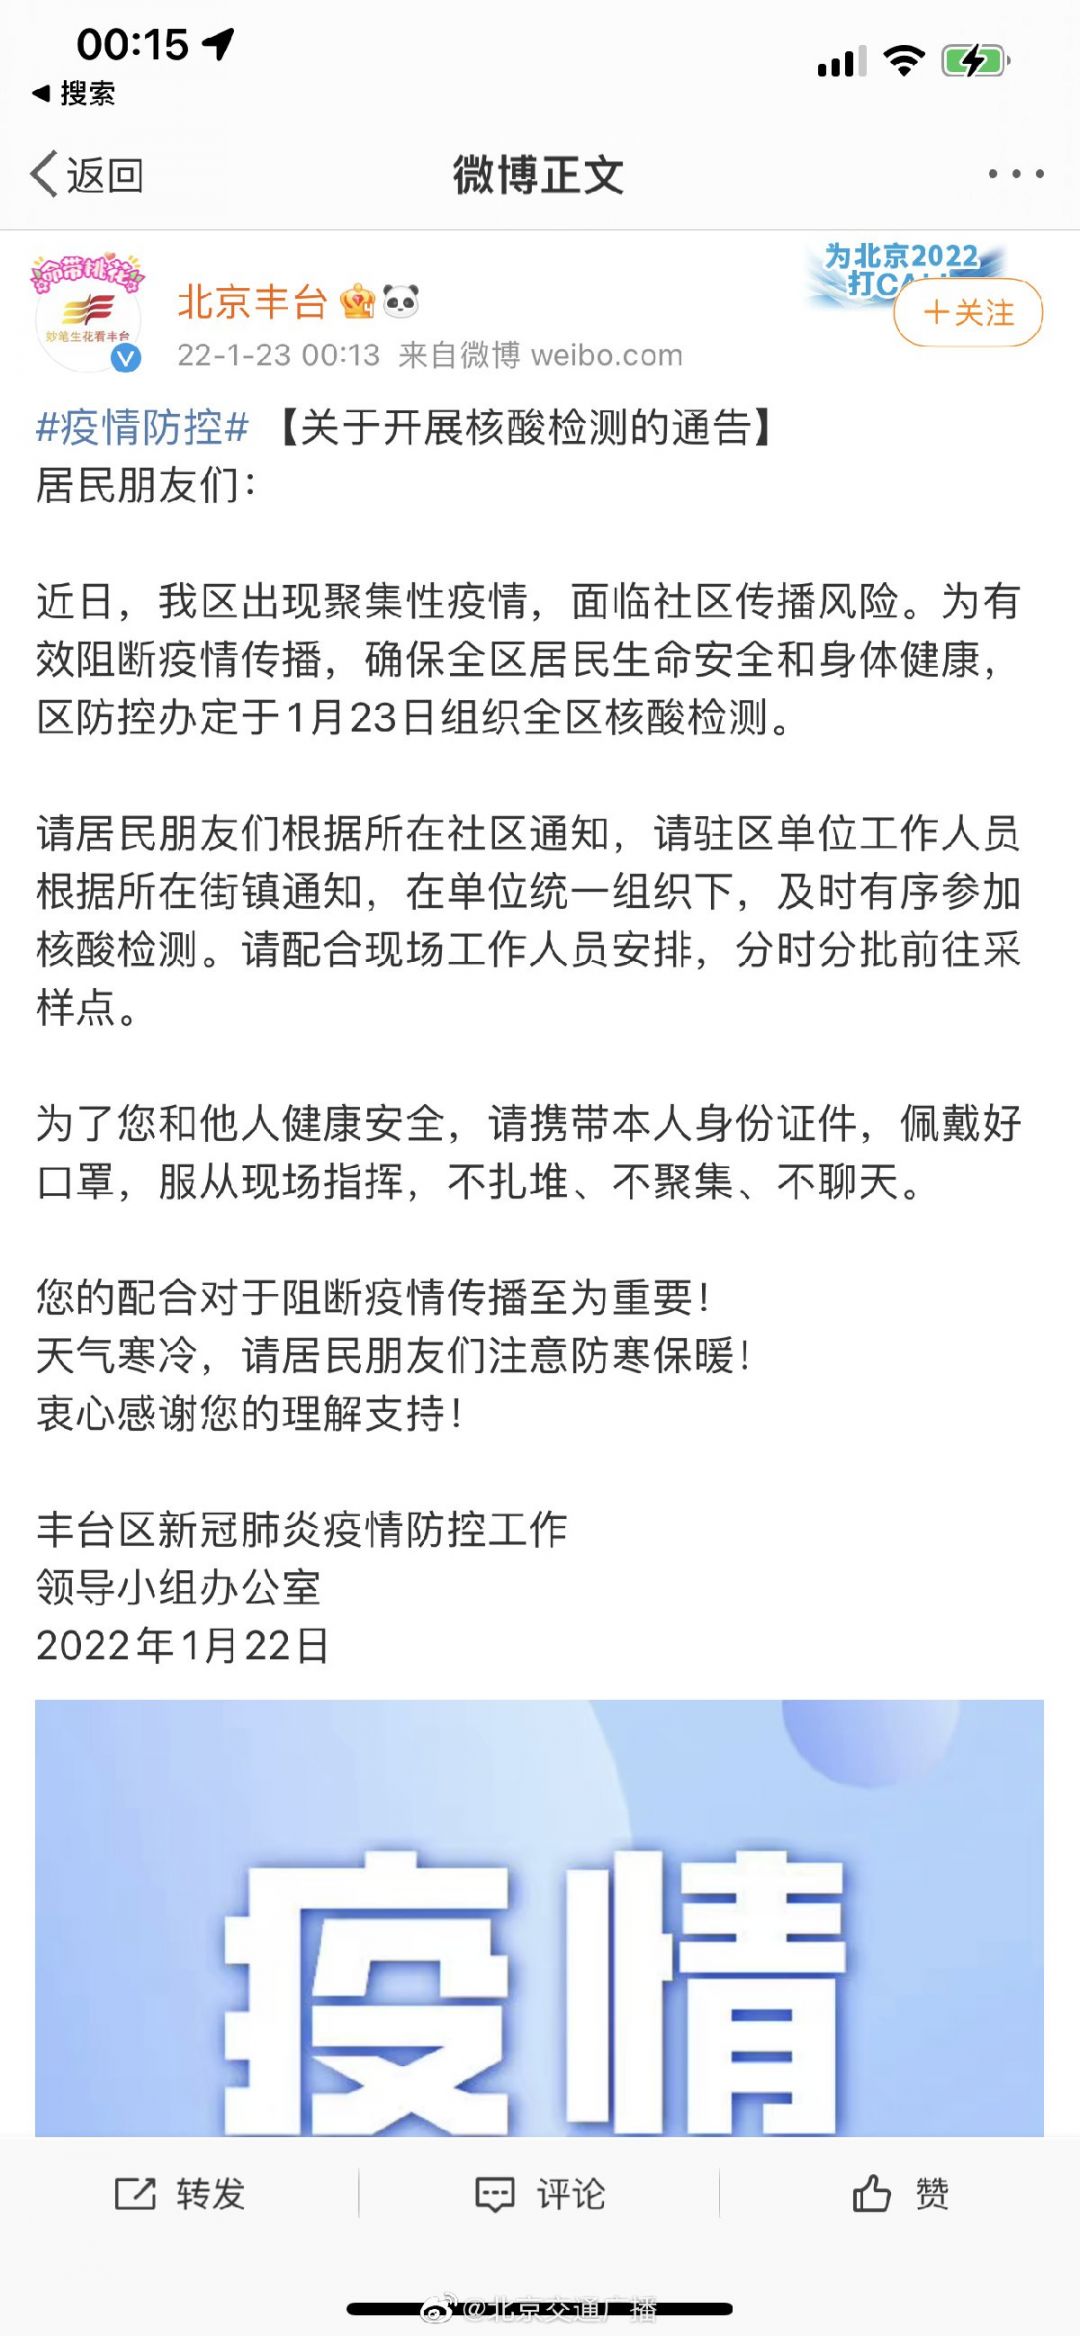 1月23日北京丰台全区开展核酸检测(附公告)